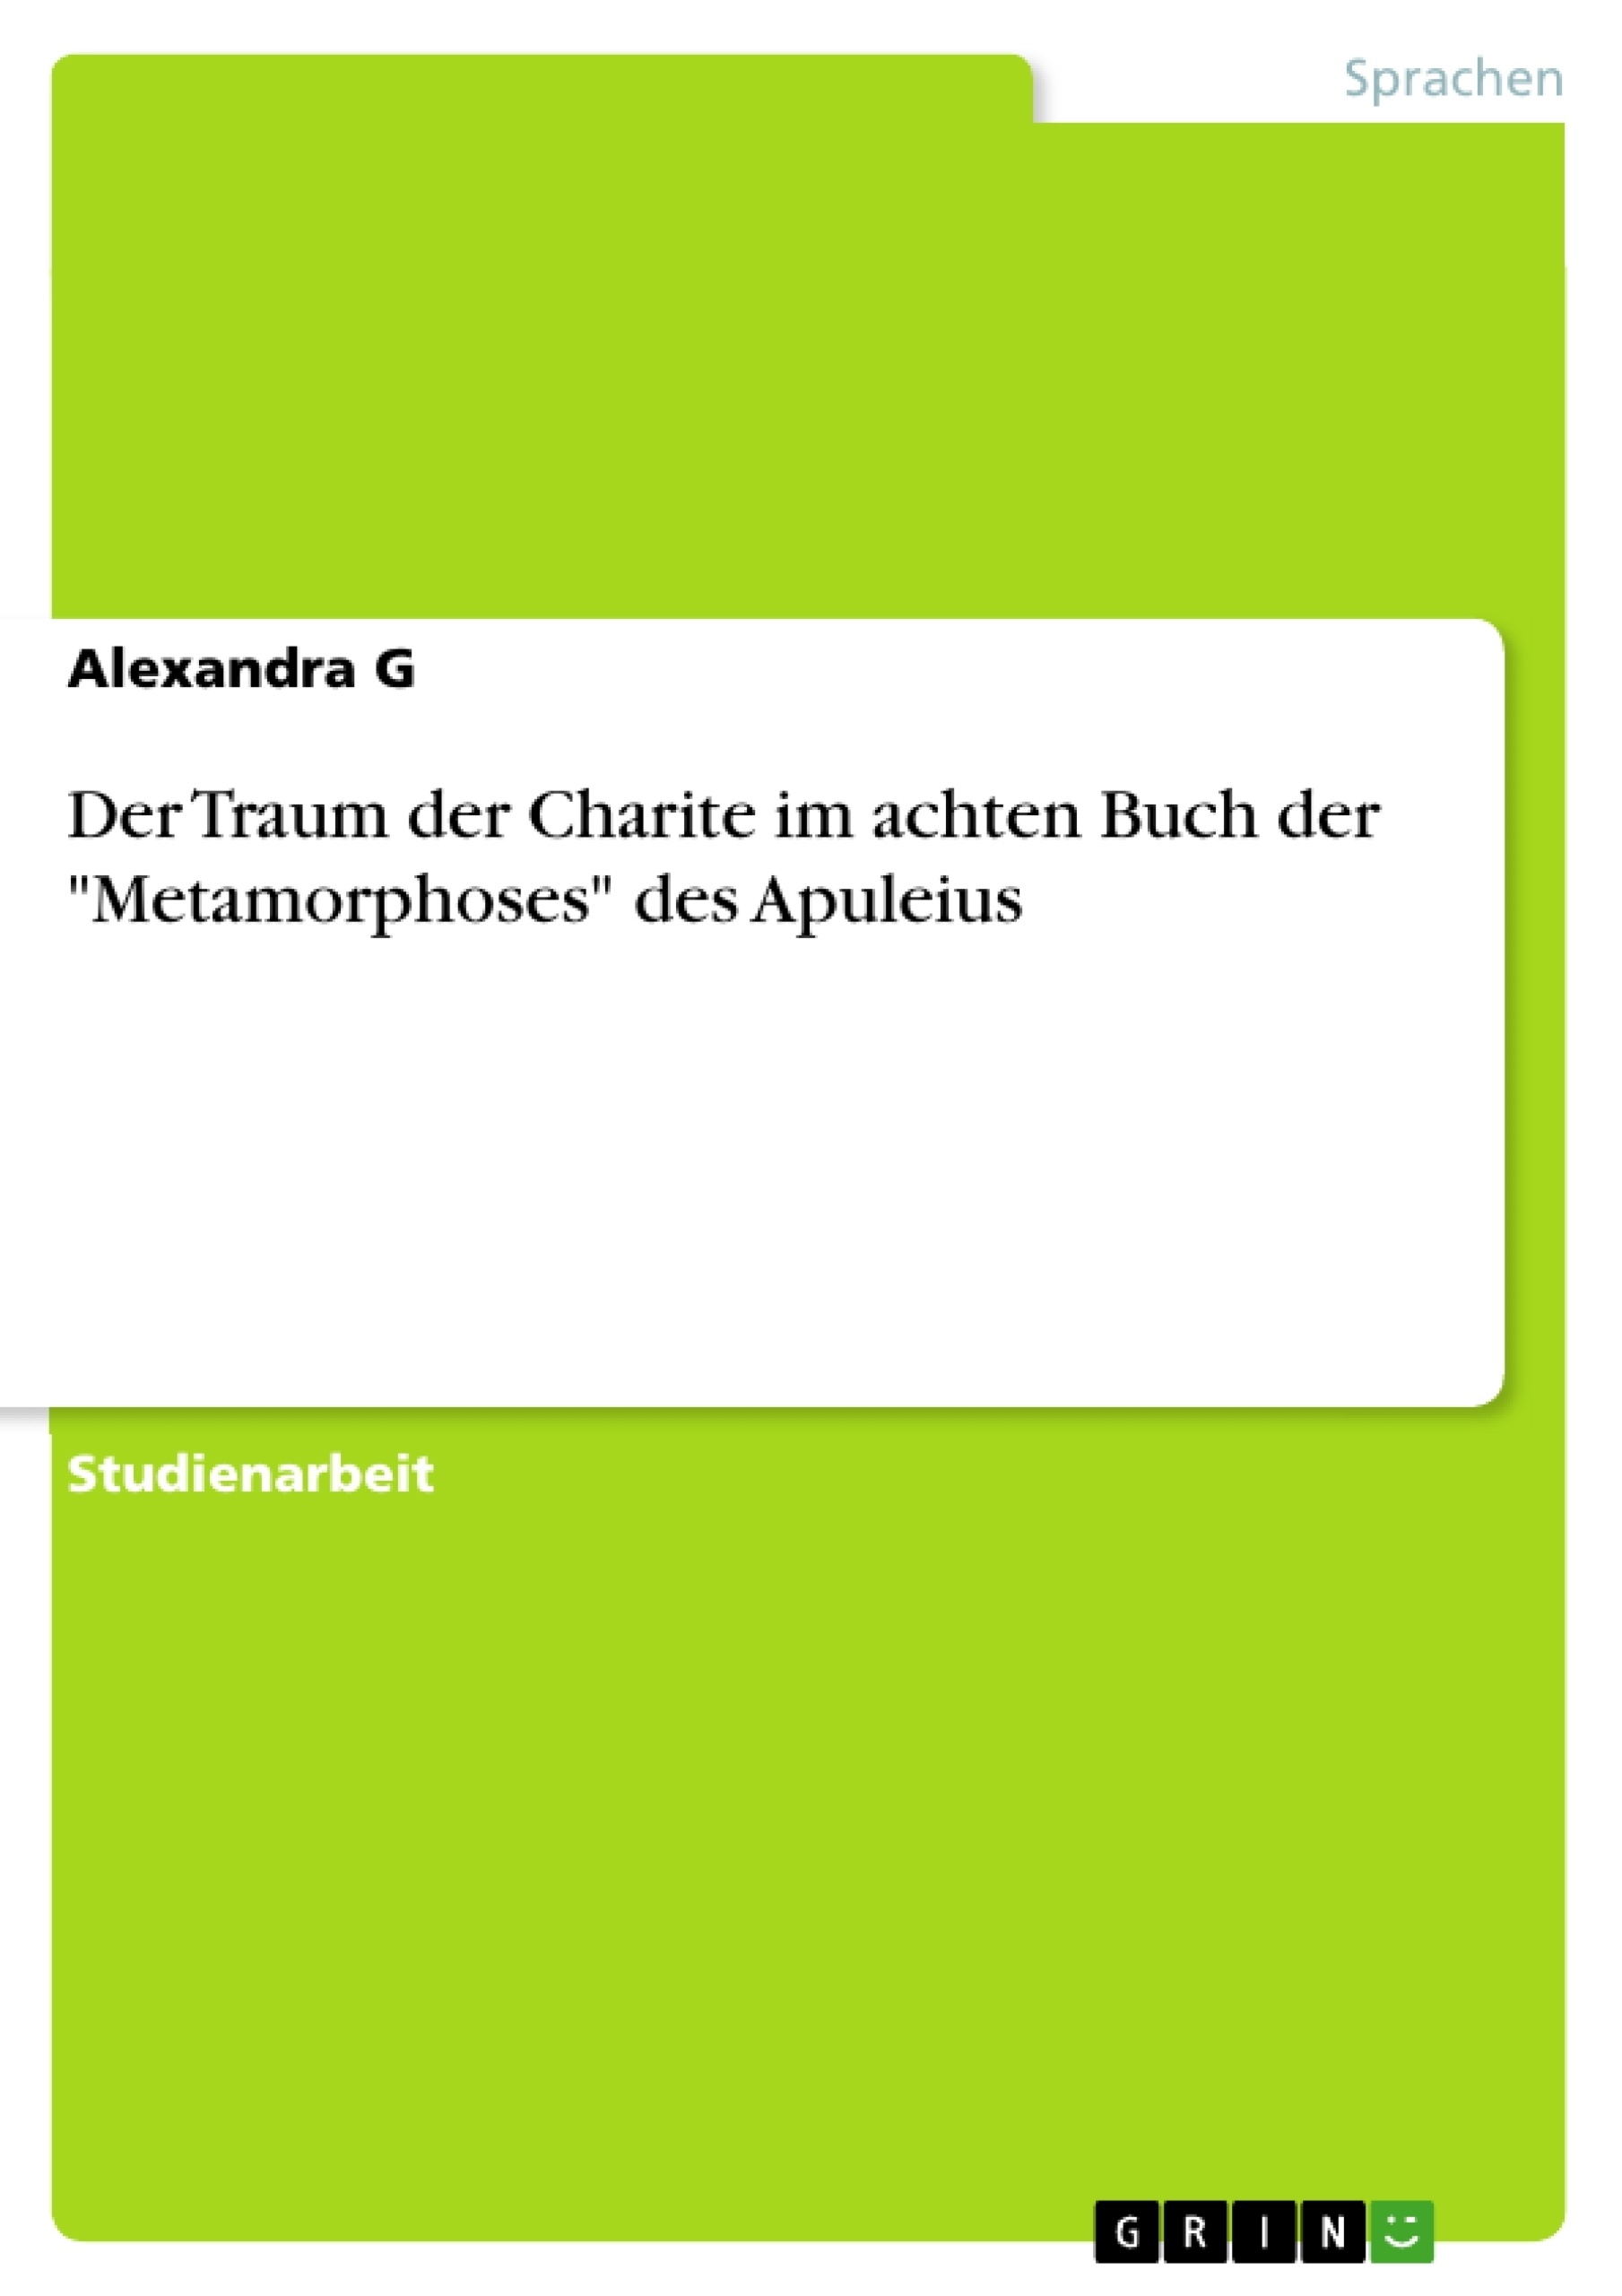 Title: Der Traum der Charite im achten Buch der "Metamorphoses" des Apuleius